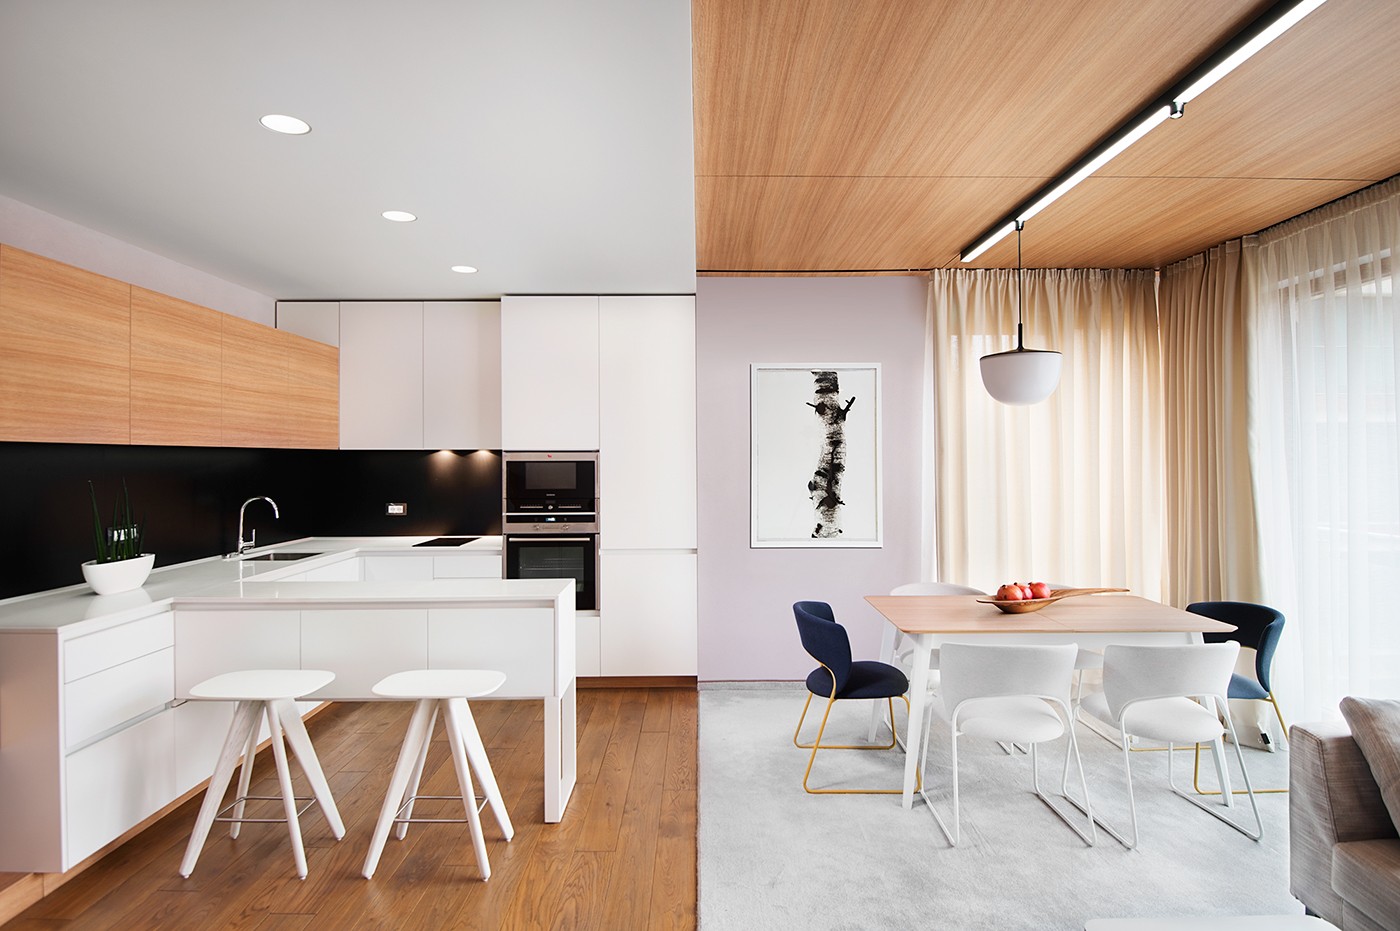 minimalist wooden kitchen set design